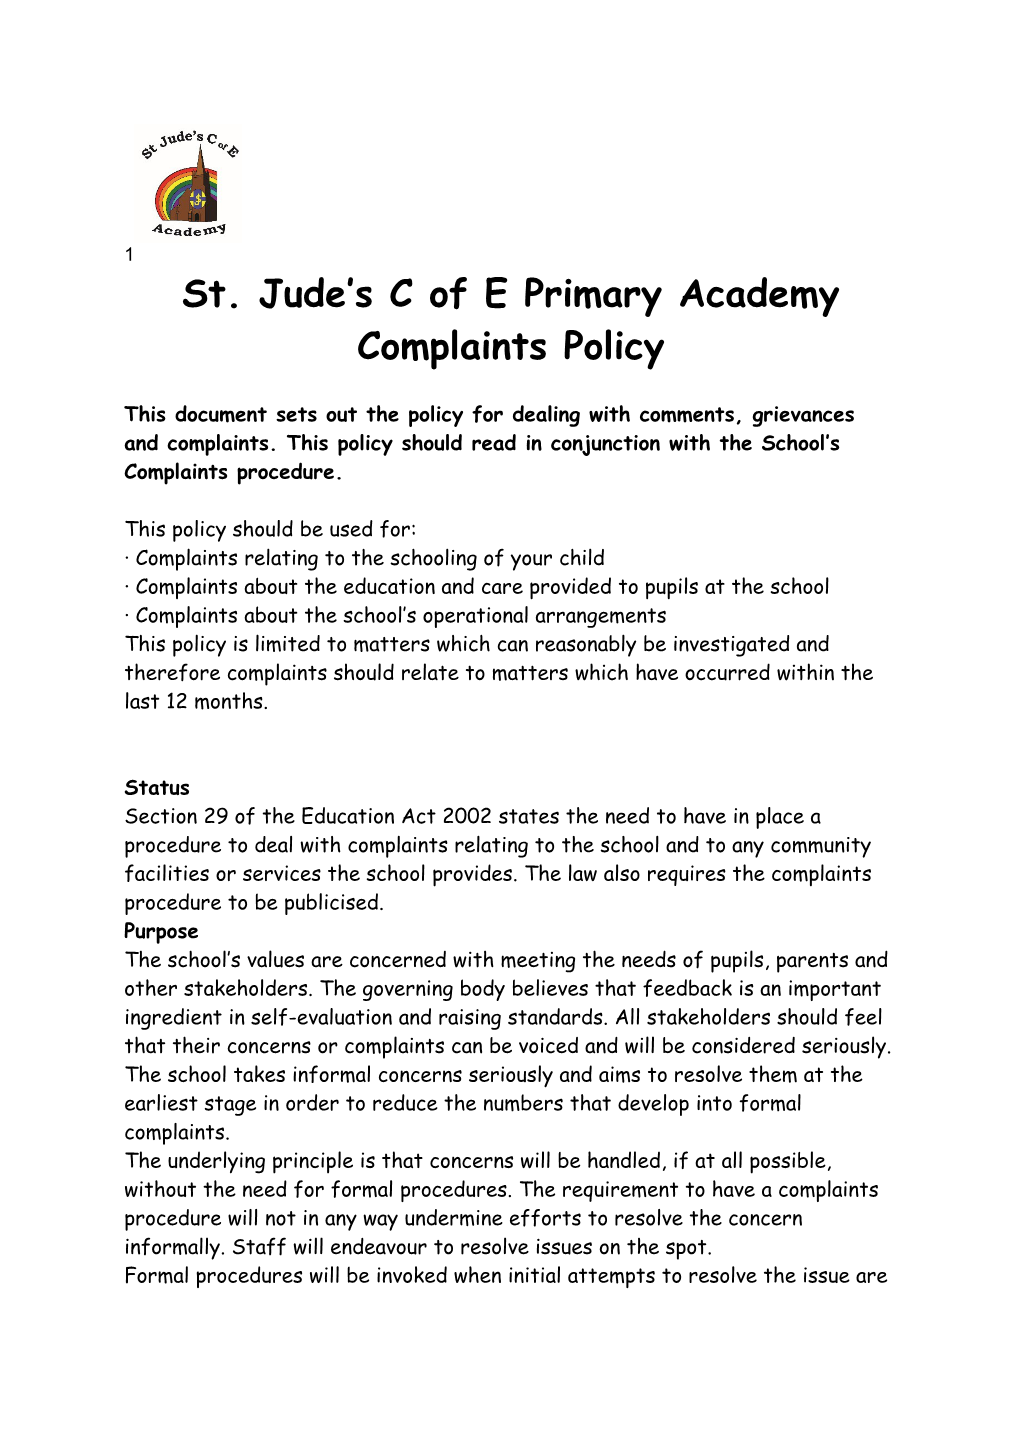 St. Jude S C of E Primary Academy